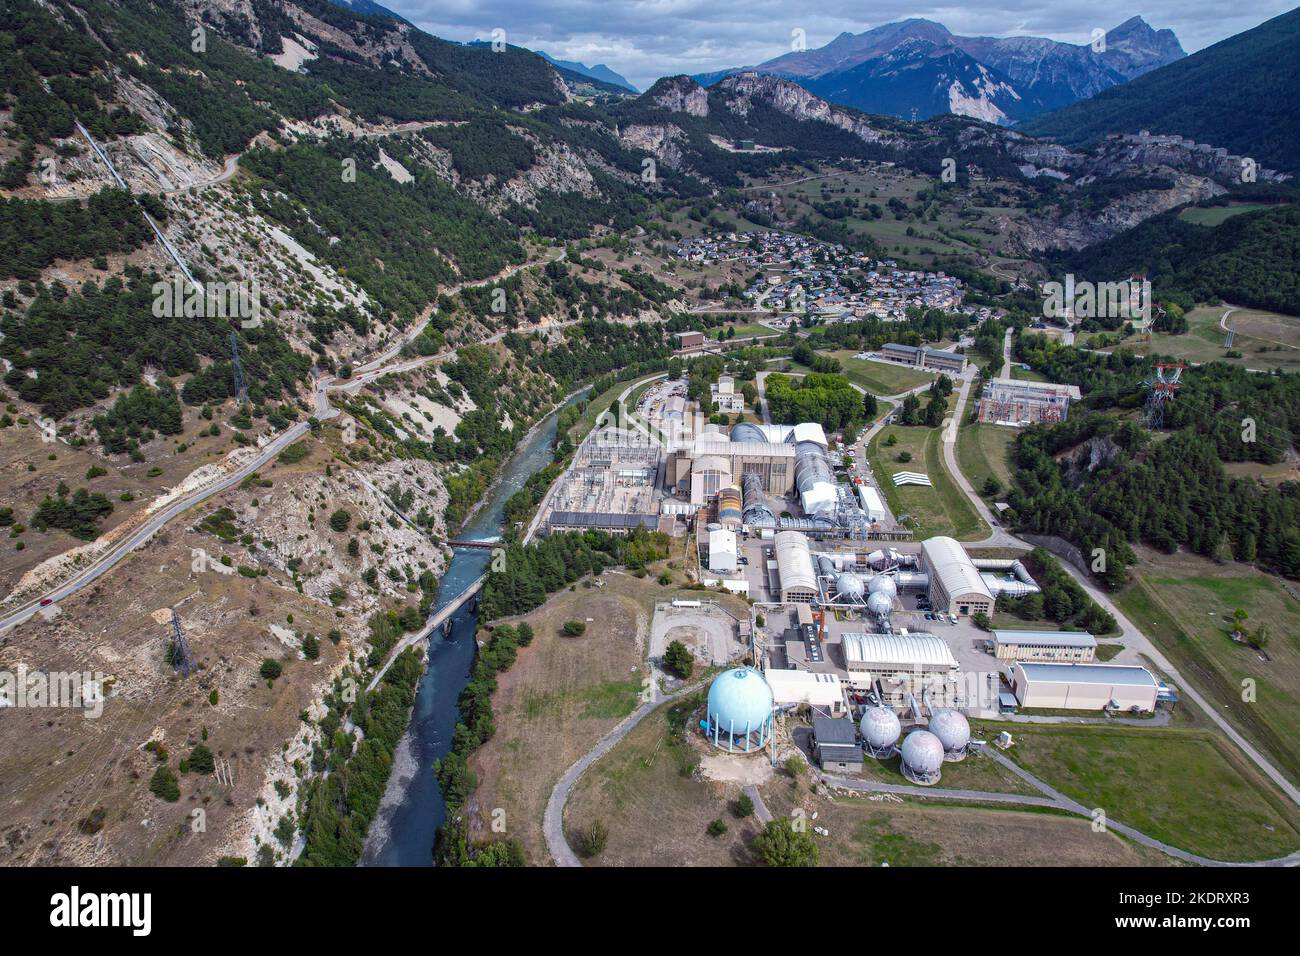 ONERA centro de investigación, el valle de Maurienne, Vanoise, los Alpes franceses, Francia, Alpes, Alpes Foto de stock